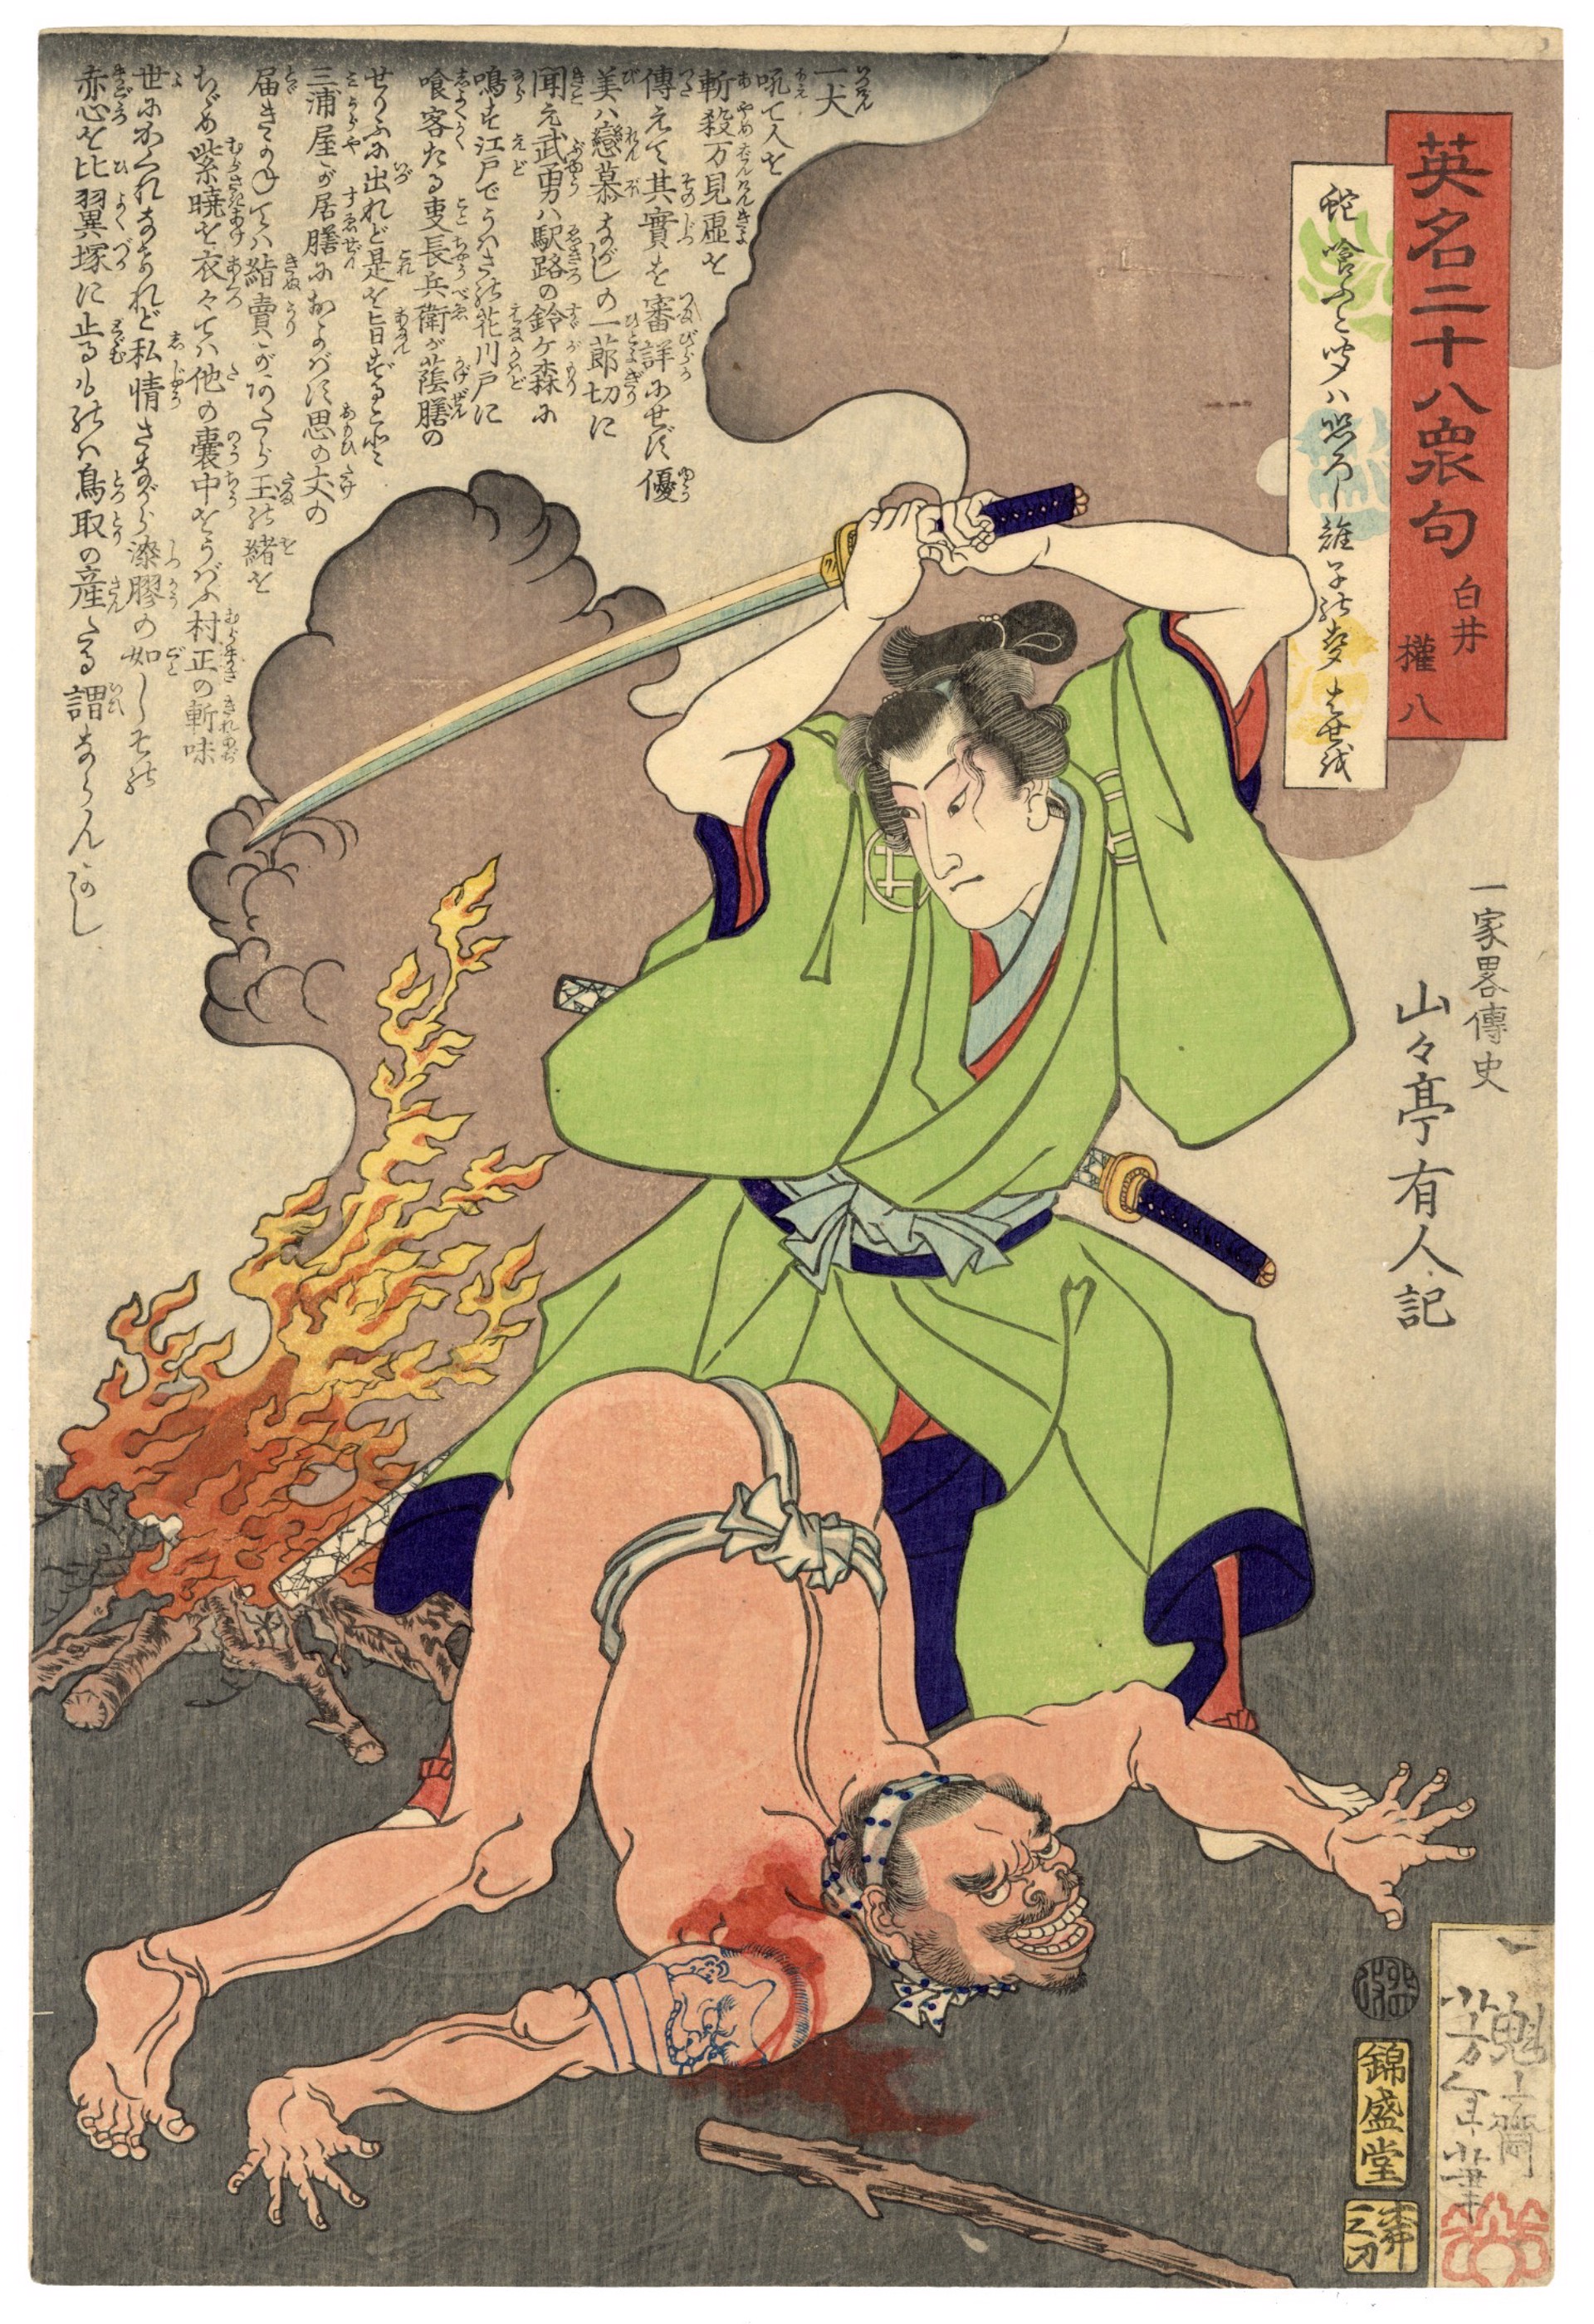 #10 Shirai Gompachi, the Samurai Street Murderer by Yoshitoshi